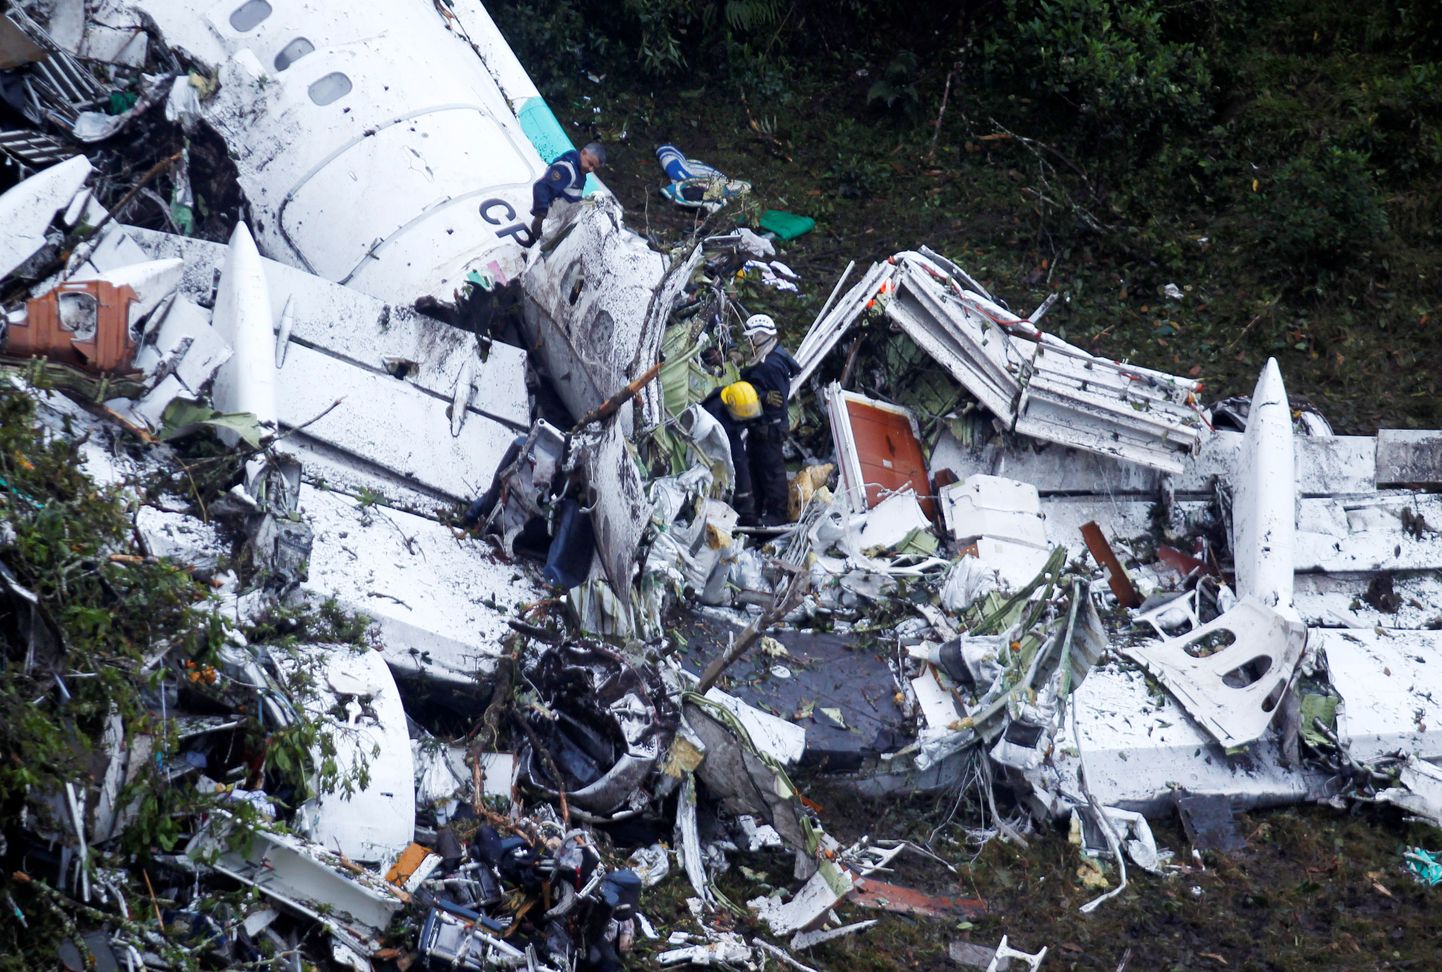 У разбившегося в Колумбии самолета кончилось топливо.